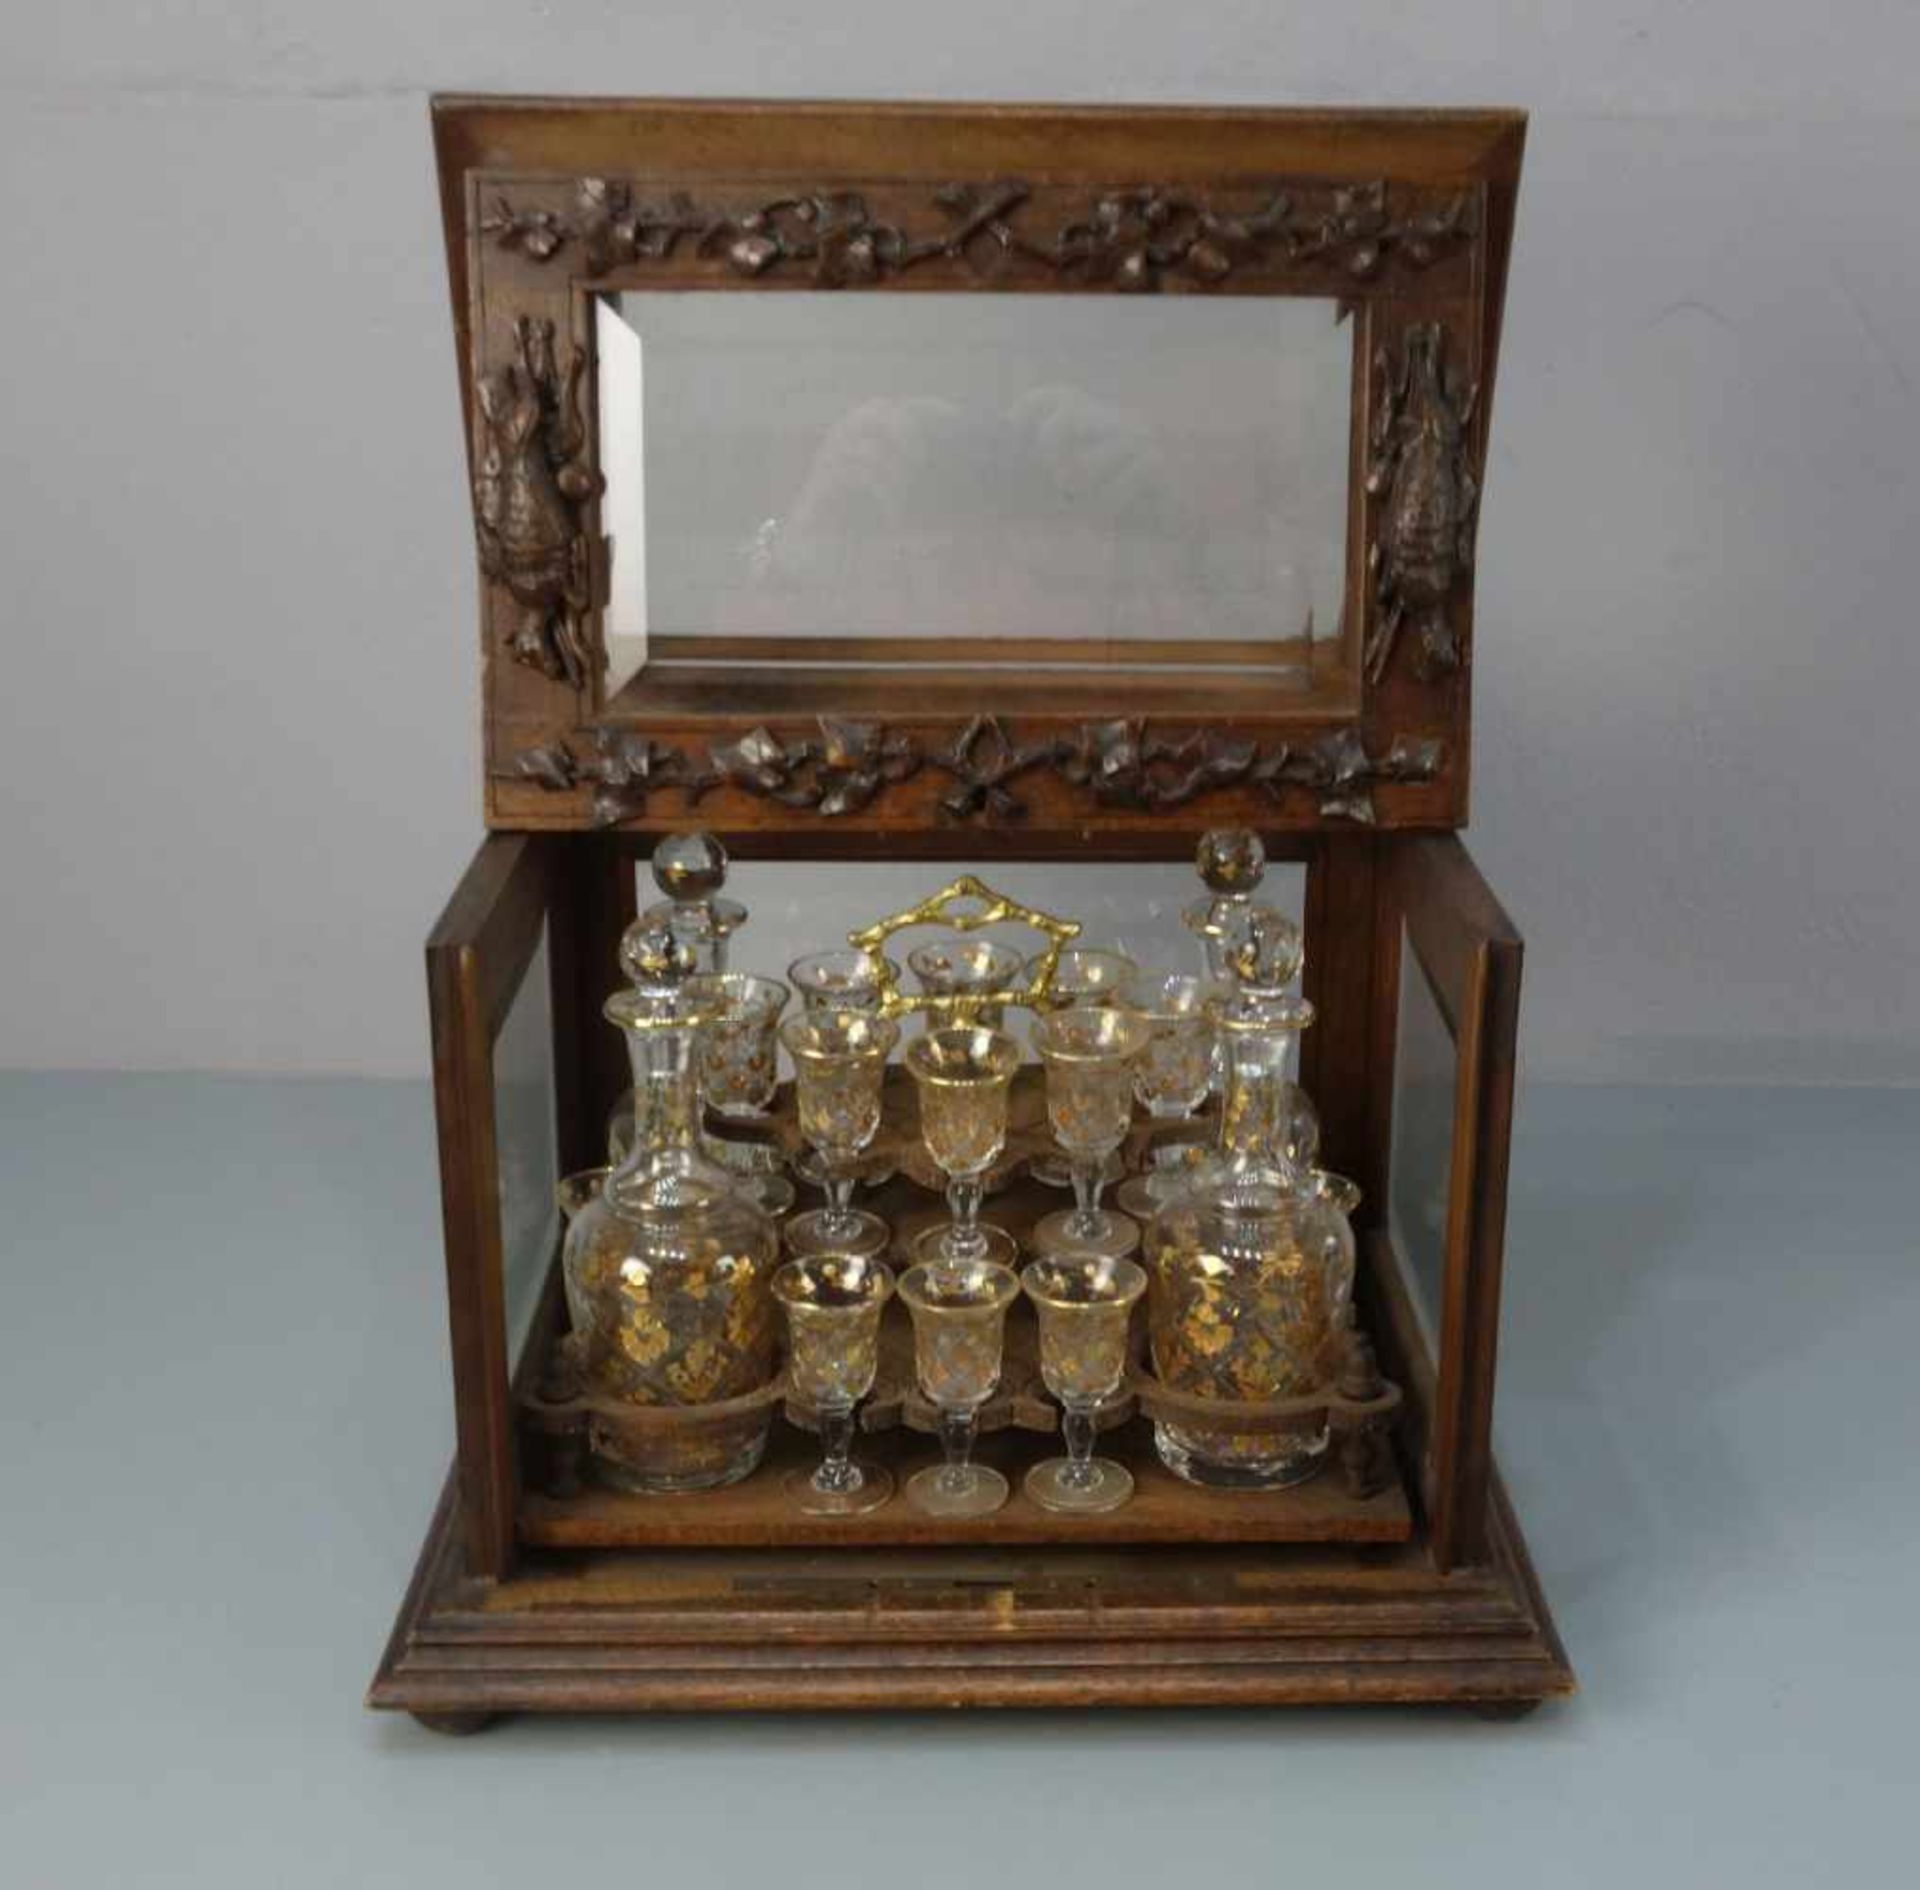 LIKÖR - SCHATULLE / liqueur box, Eiche und Glas, um 1880. Allseitig facettiert verglaster, - Bild 3 aus 4